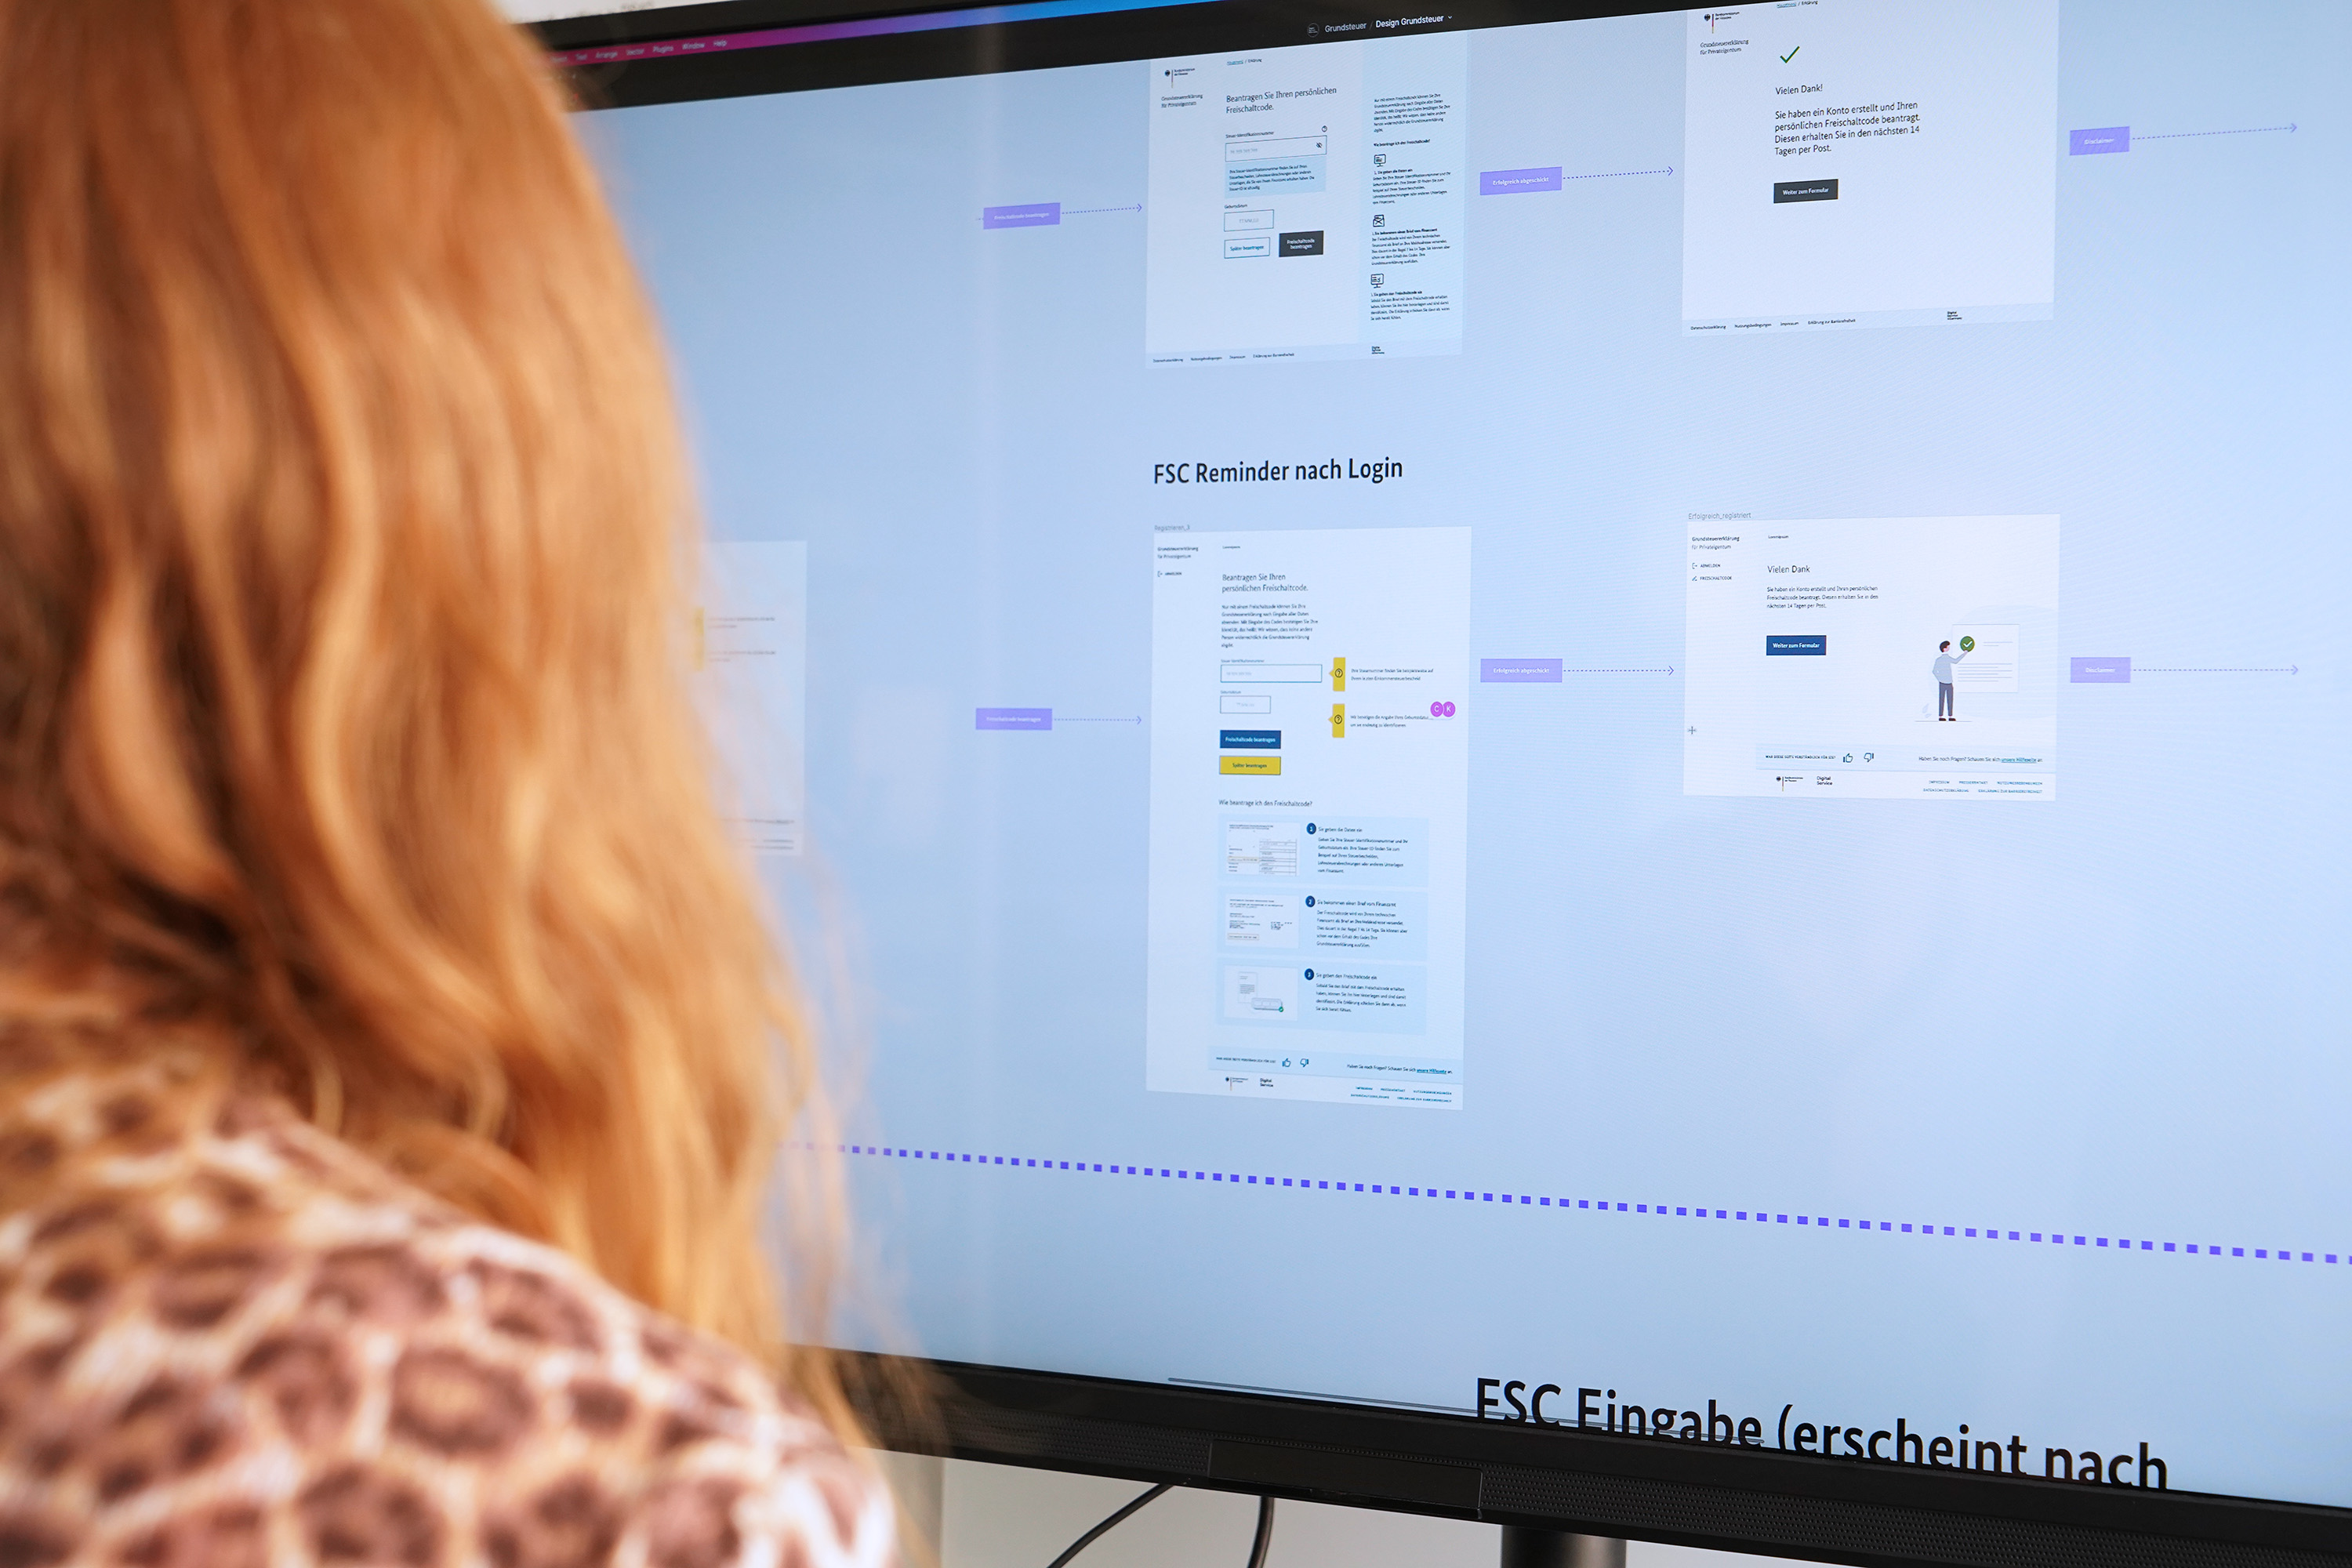 Eine Person mit langen Haaren schaut auf einen großen Bildschirm, der verkleinert eine Sequenz an Seiten eines Online-Verwaltungsservices zeigt